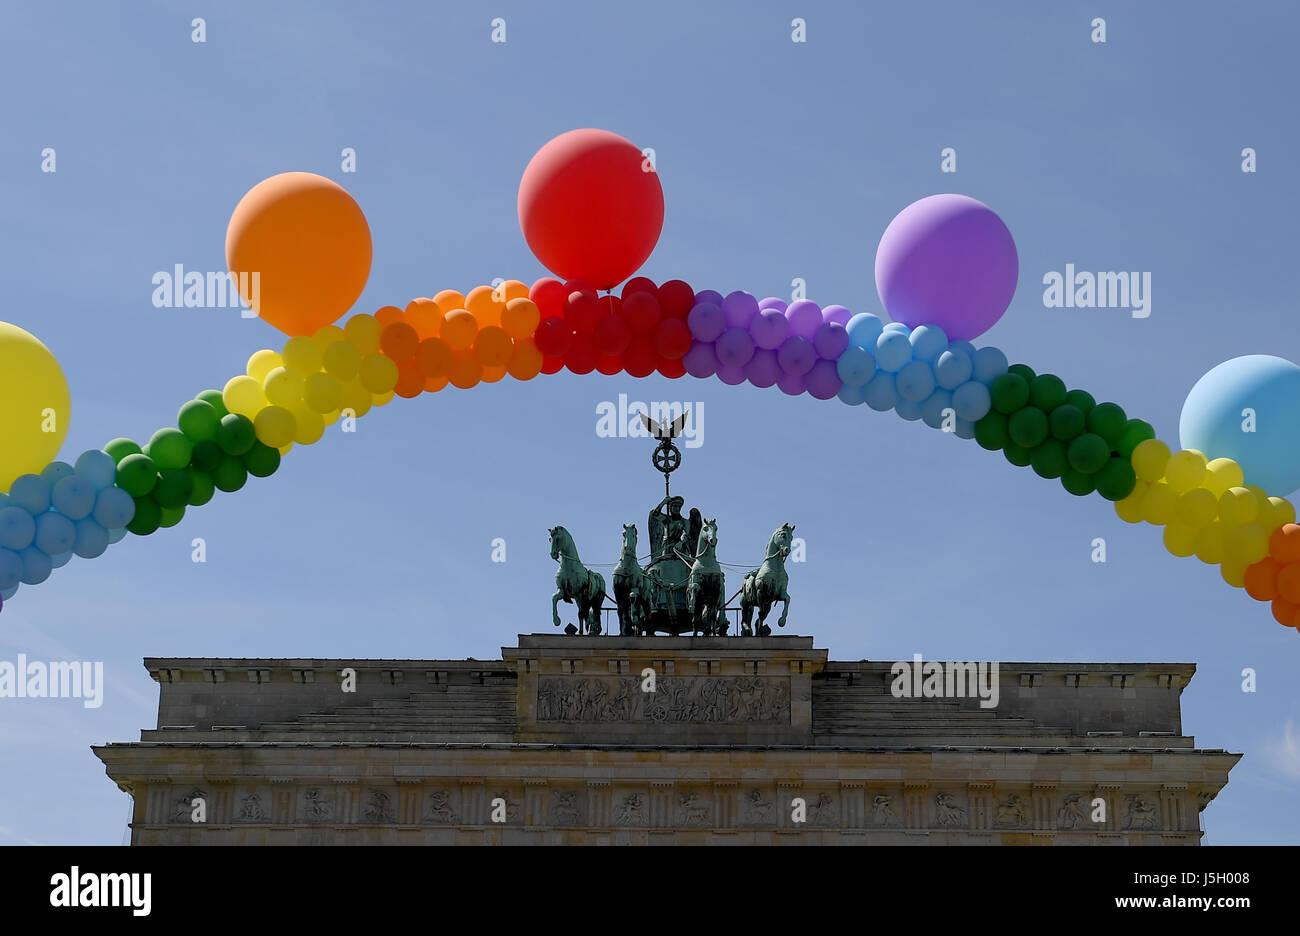 Berlino, Germania. Il 17 maggio 2017. Un arcobaleno di palloncini è tenuto aloft davanti alla Porta di Brandeburgo durante il rally per la Giornata Internazionale contro l'Omofobia Transphobia e Biphobia a Berlino, Germania, 17 maggio 2017. Foto: Britta Pedersen/dpa-Zentralbild/ZB/dpa/Alamy Live News Foto Stock